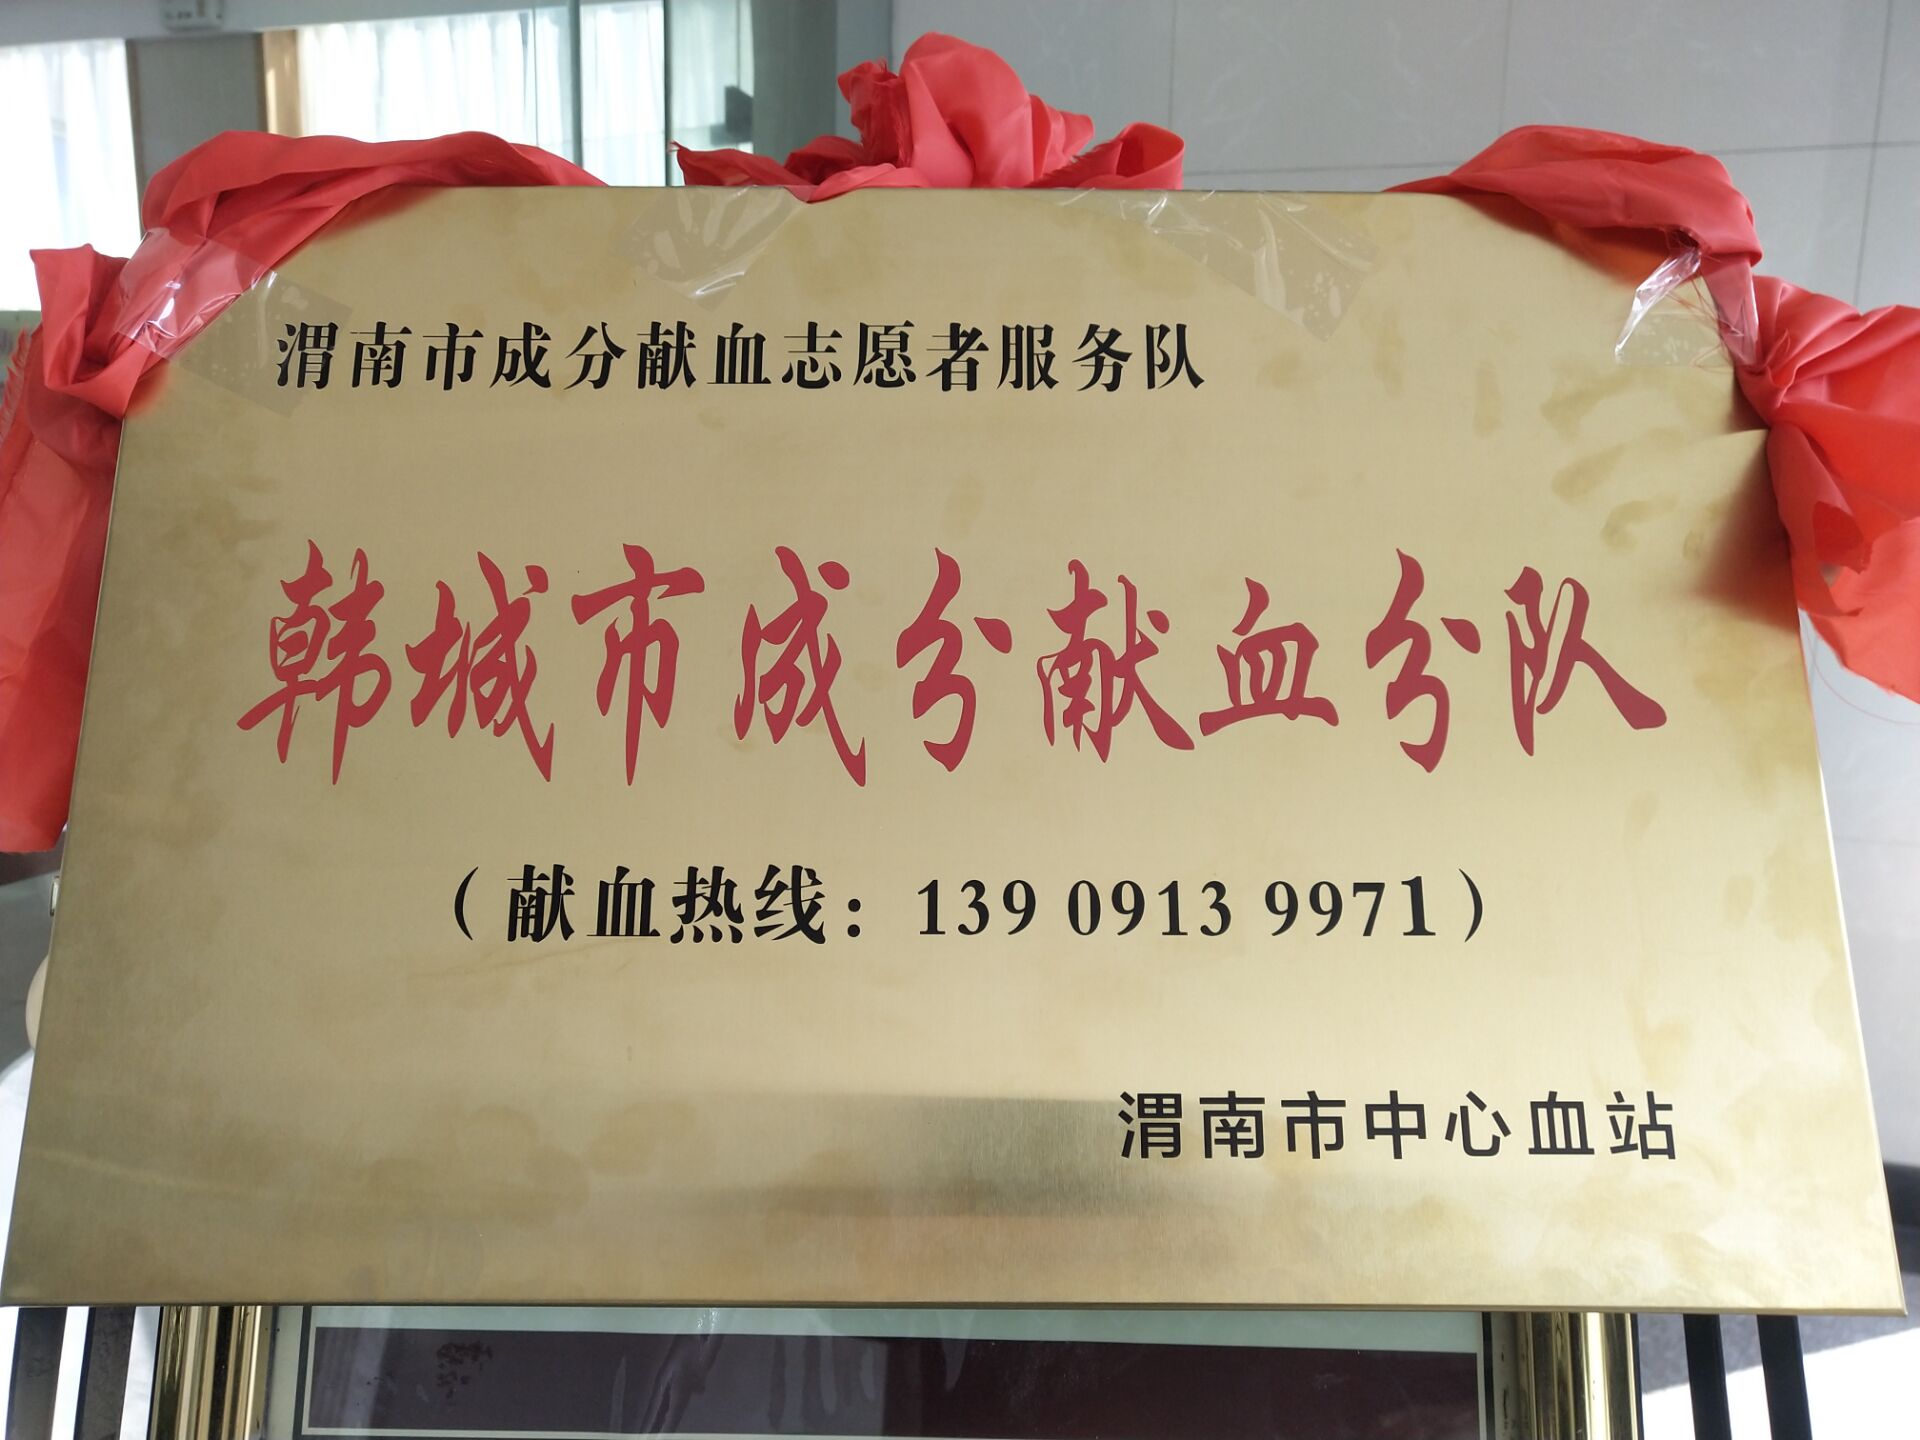 龙钢综合服务公司禹龙会议中心被授予渭南韩城市第一个“成分献血分队”